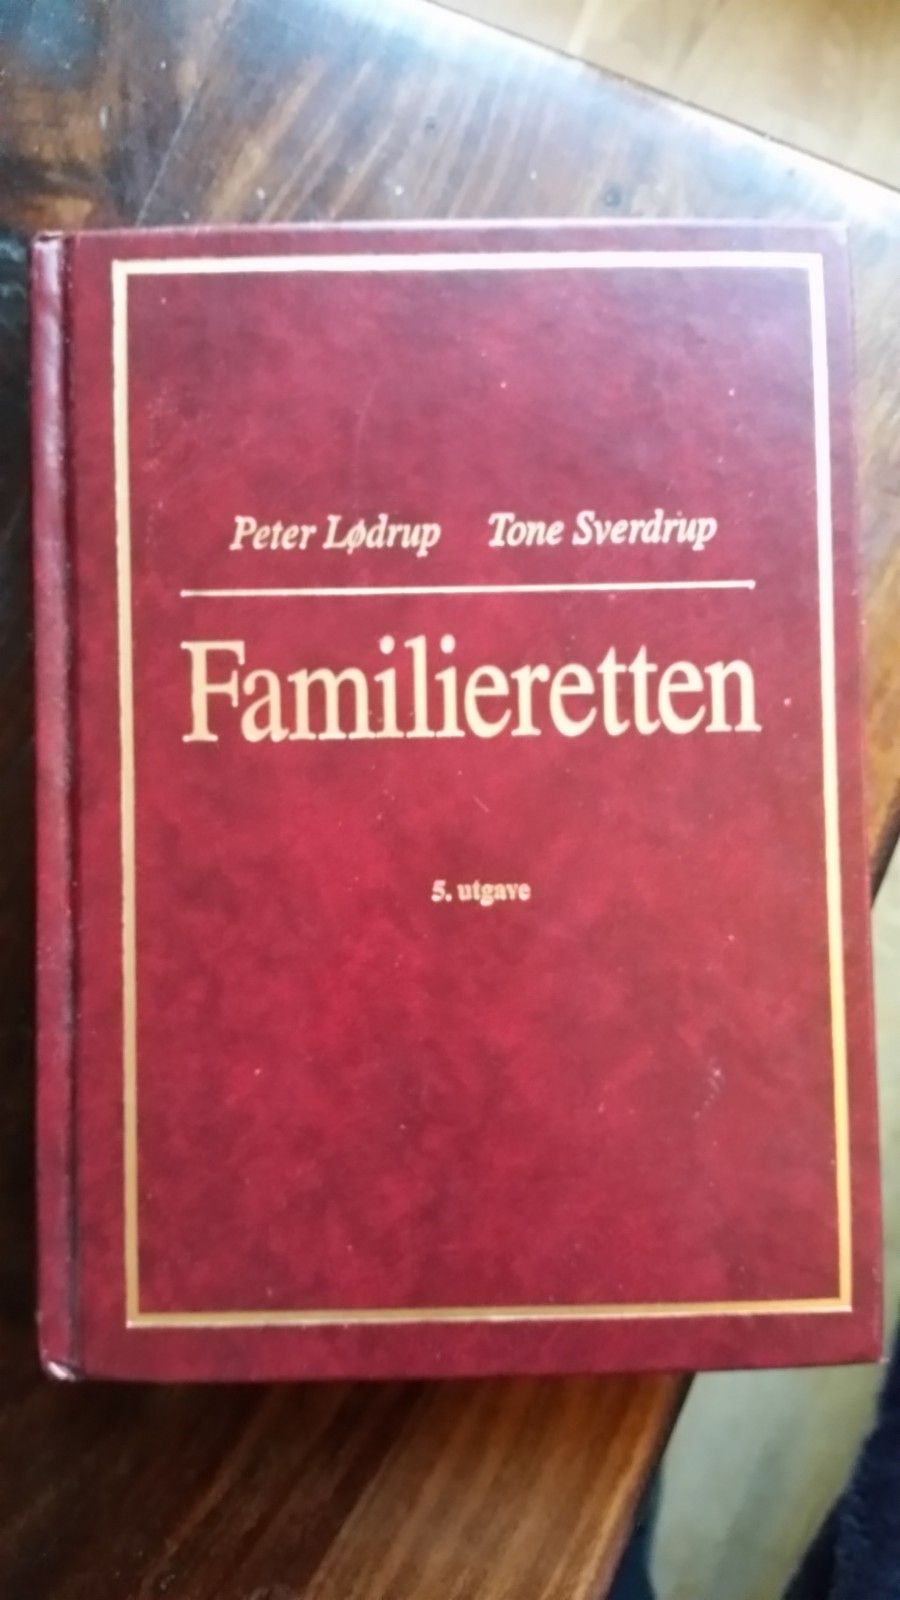 Juss. * Familieretten, 5 utgave, **- av Peter Lødrup og Tone Sverdrup | torget